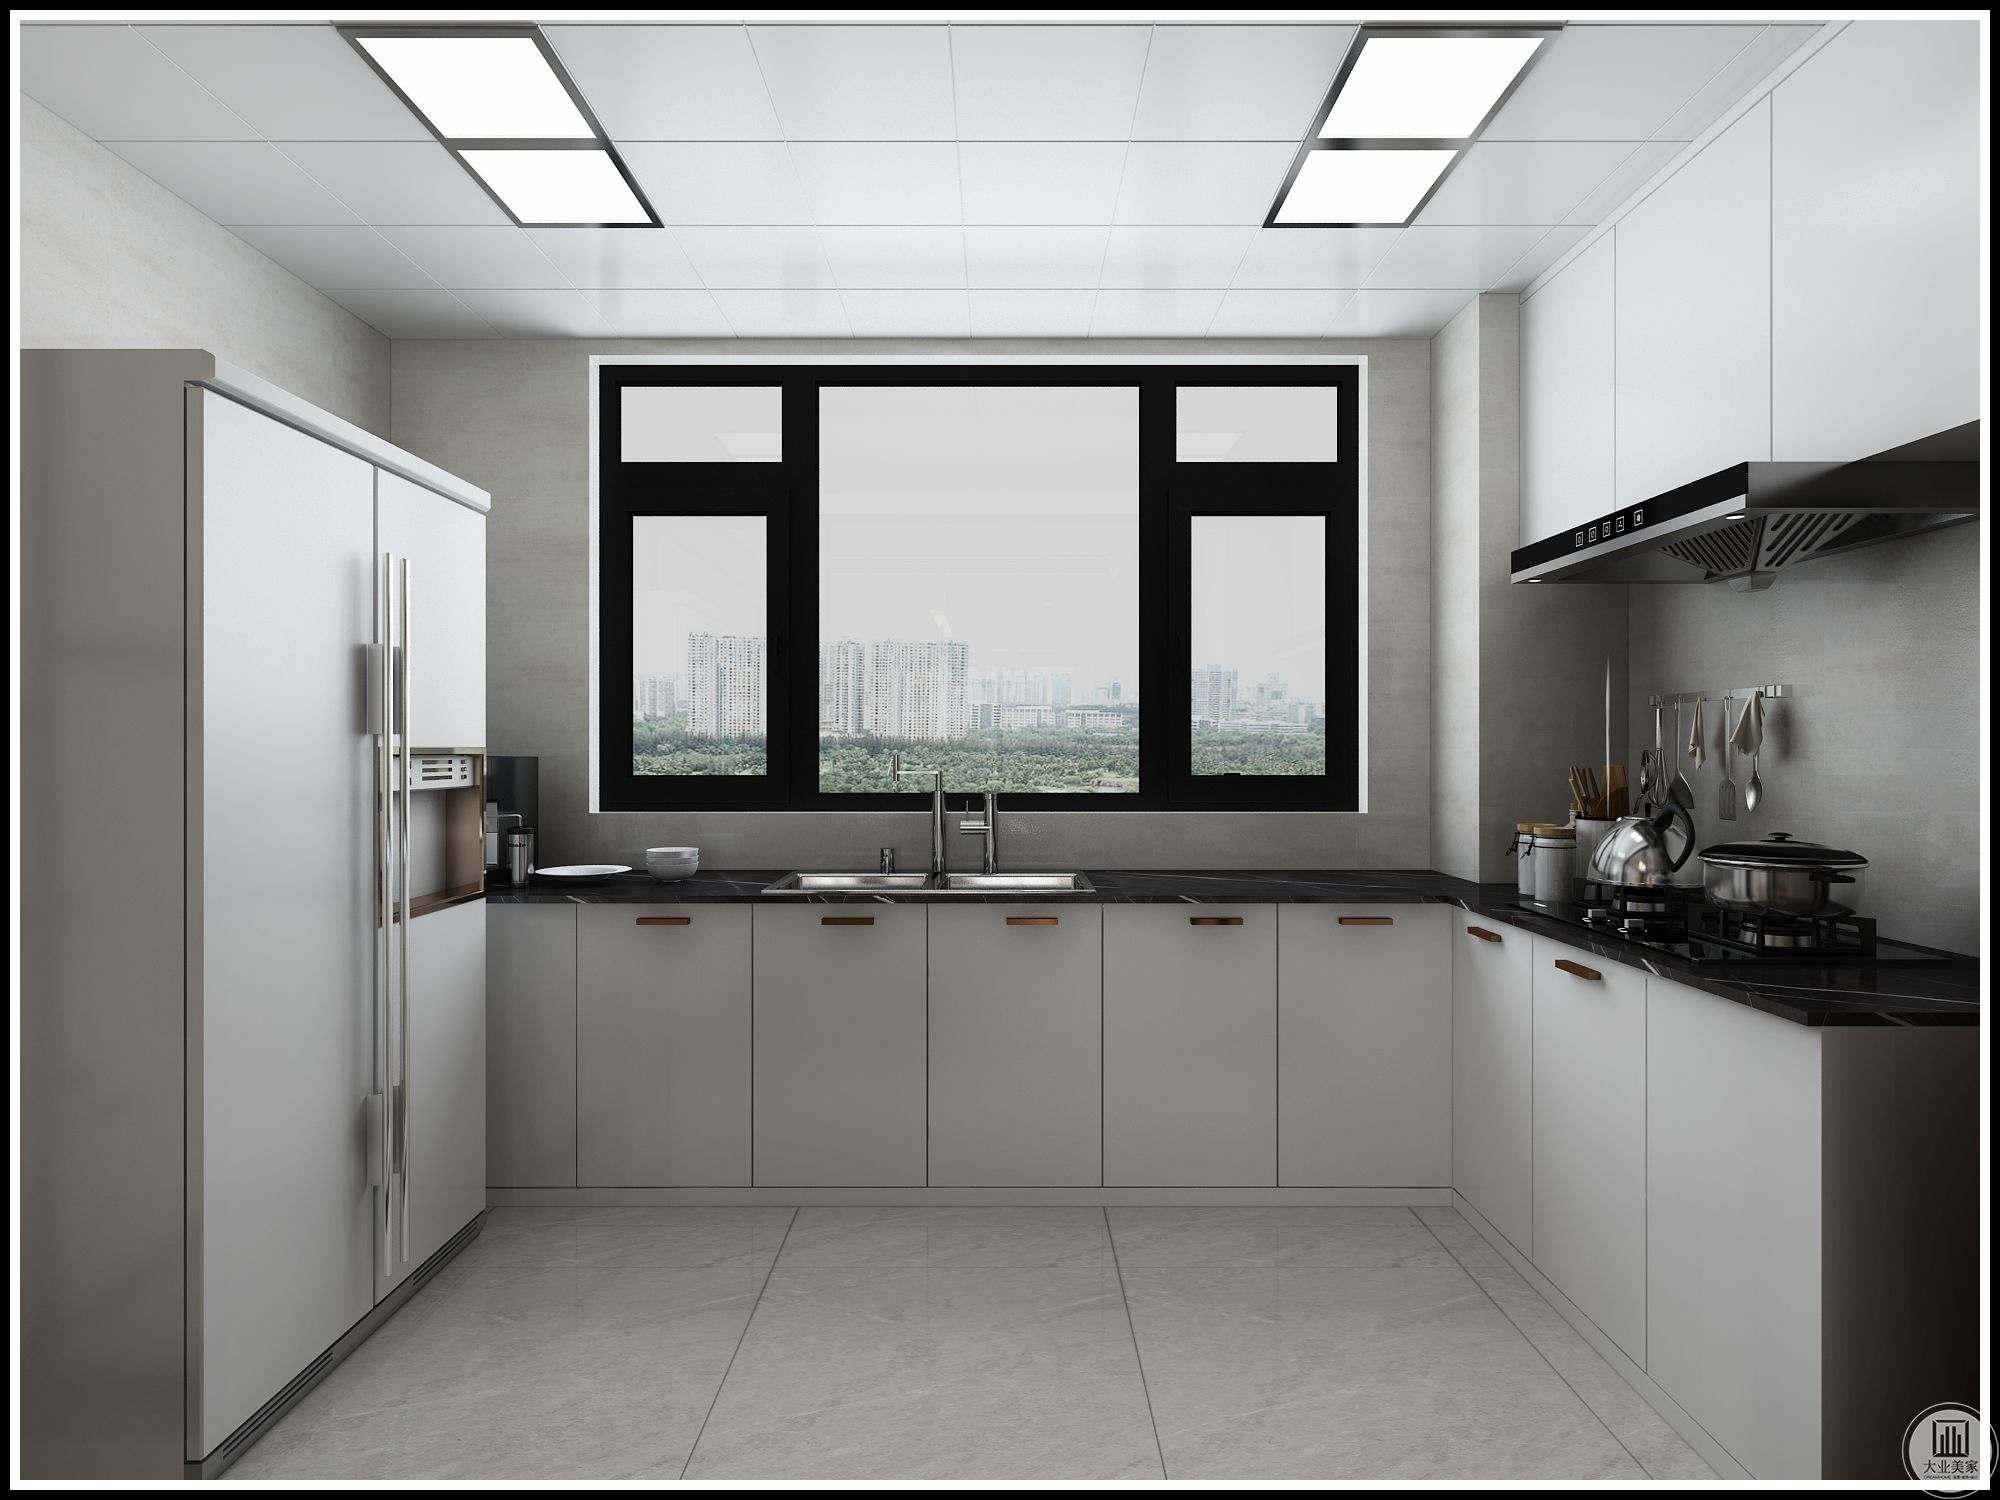 厨房空间本着储物空间大、使用方便为原则设计。